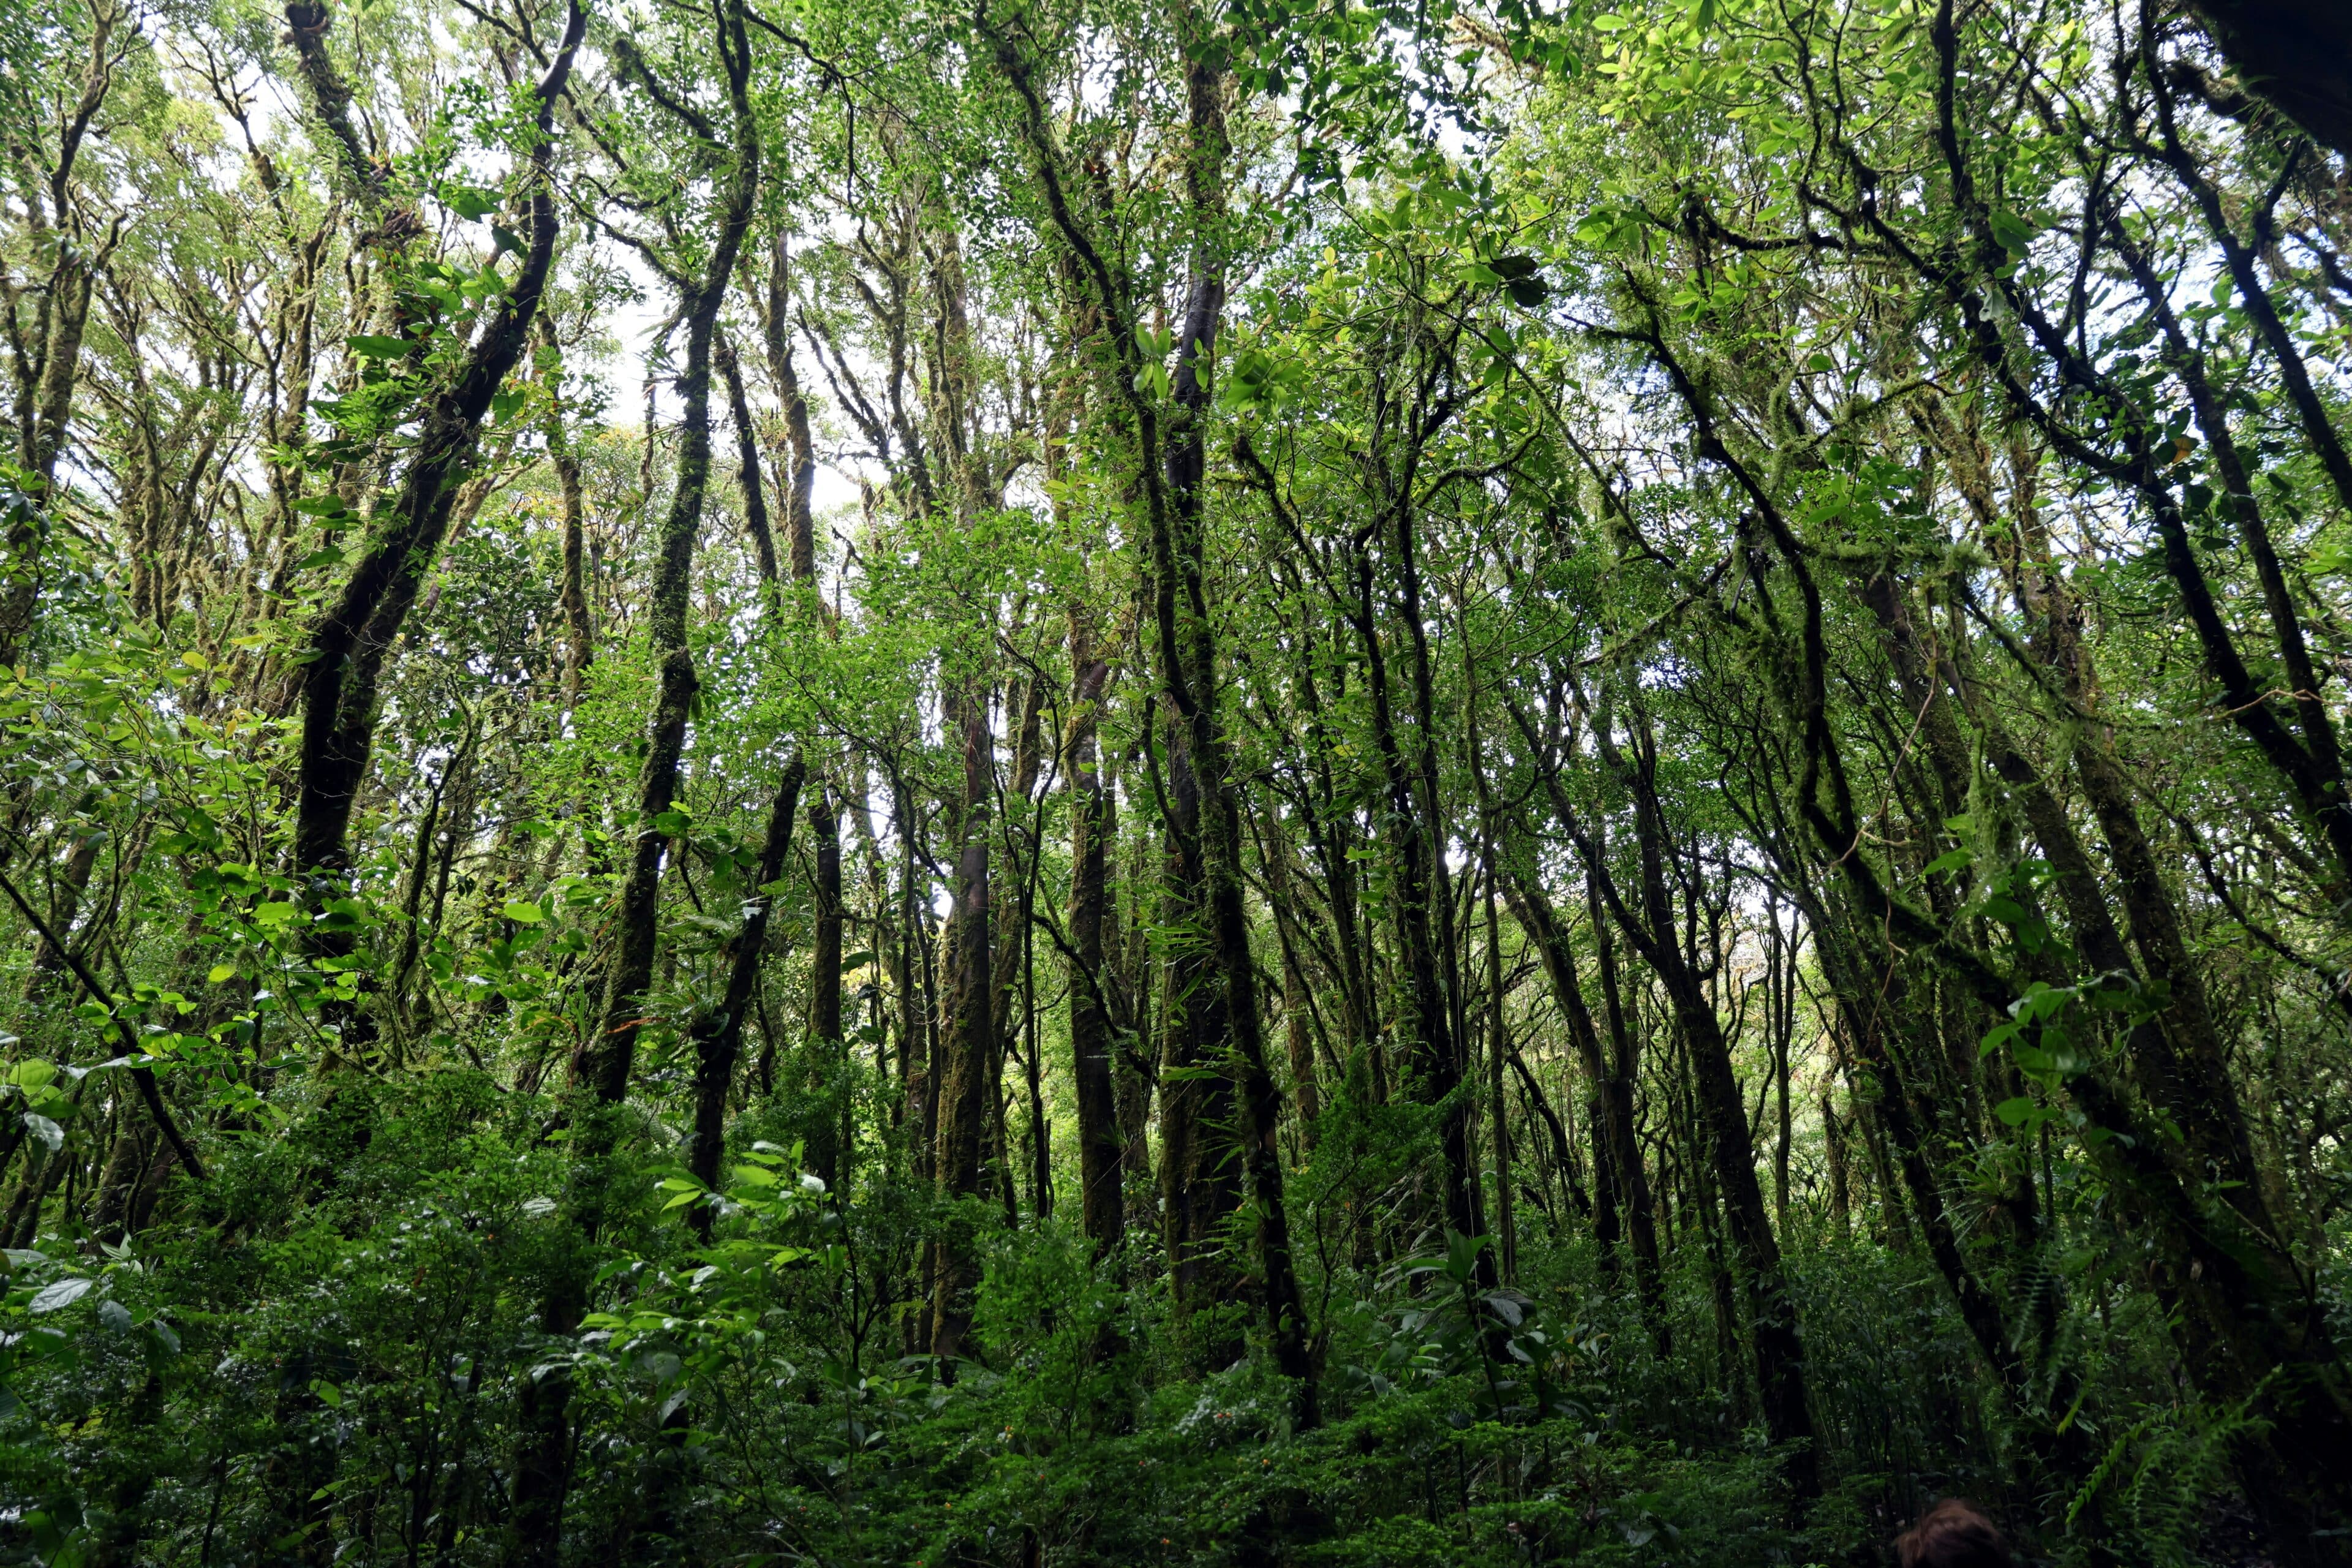 Monteverde Cloud Forest Reserve